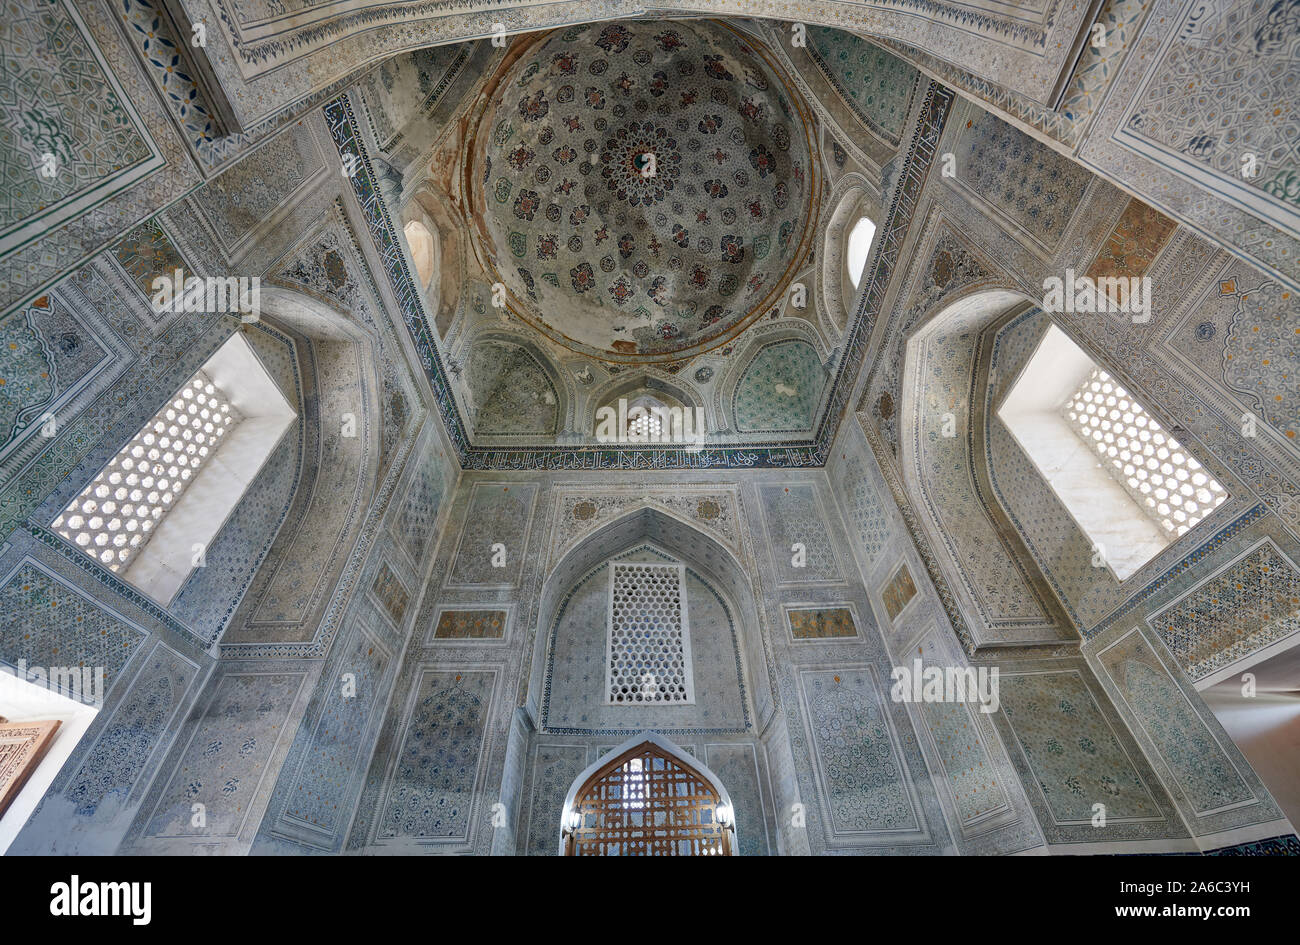 Innenaufnahme des Gumbazi Saidon und Sheikh Shamsiddin Kulol Mausoleum, Dorut-Tilavat-Komplex und Gök-Gumbas-Moschee, Shahrisabz, Usbekistan, Zentrala Stock Photo